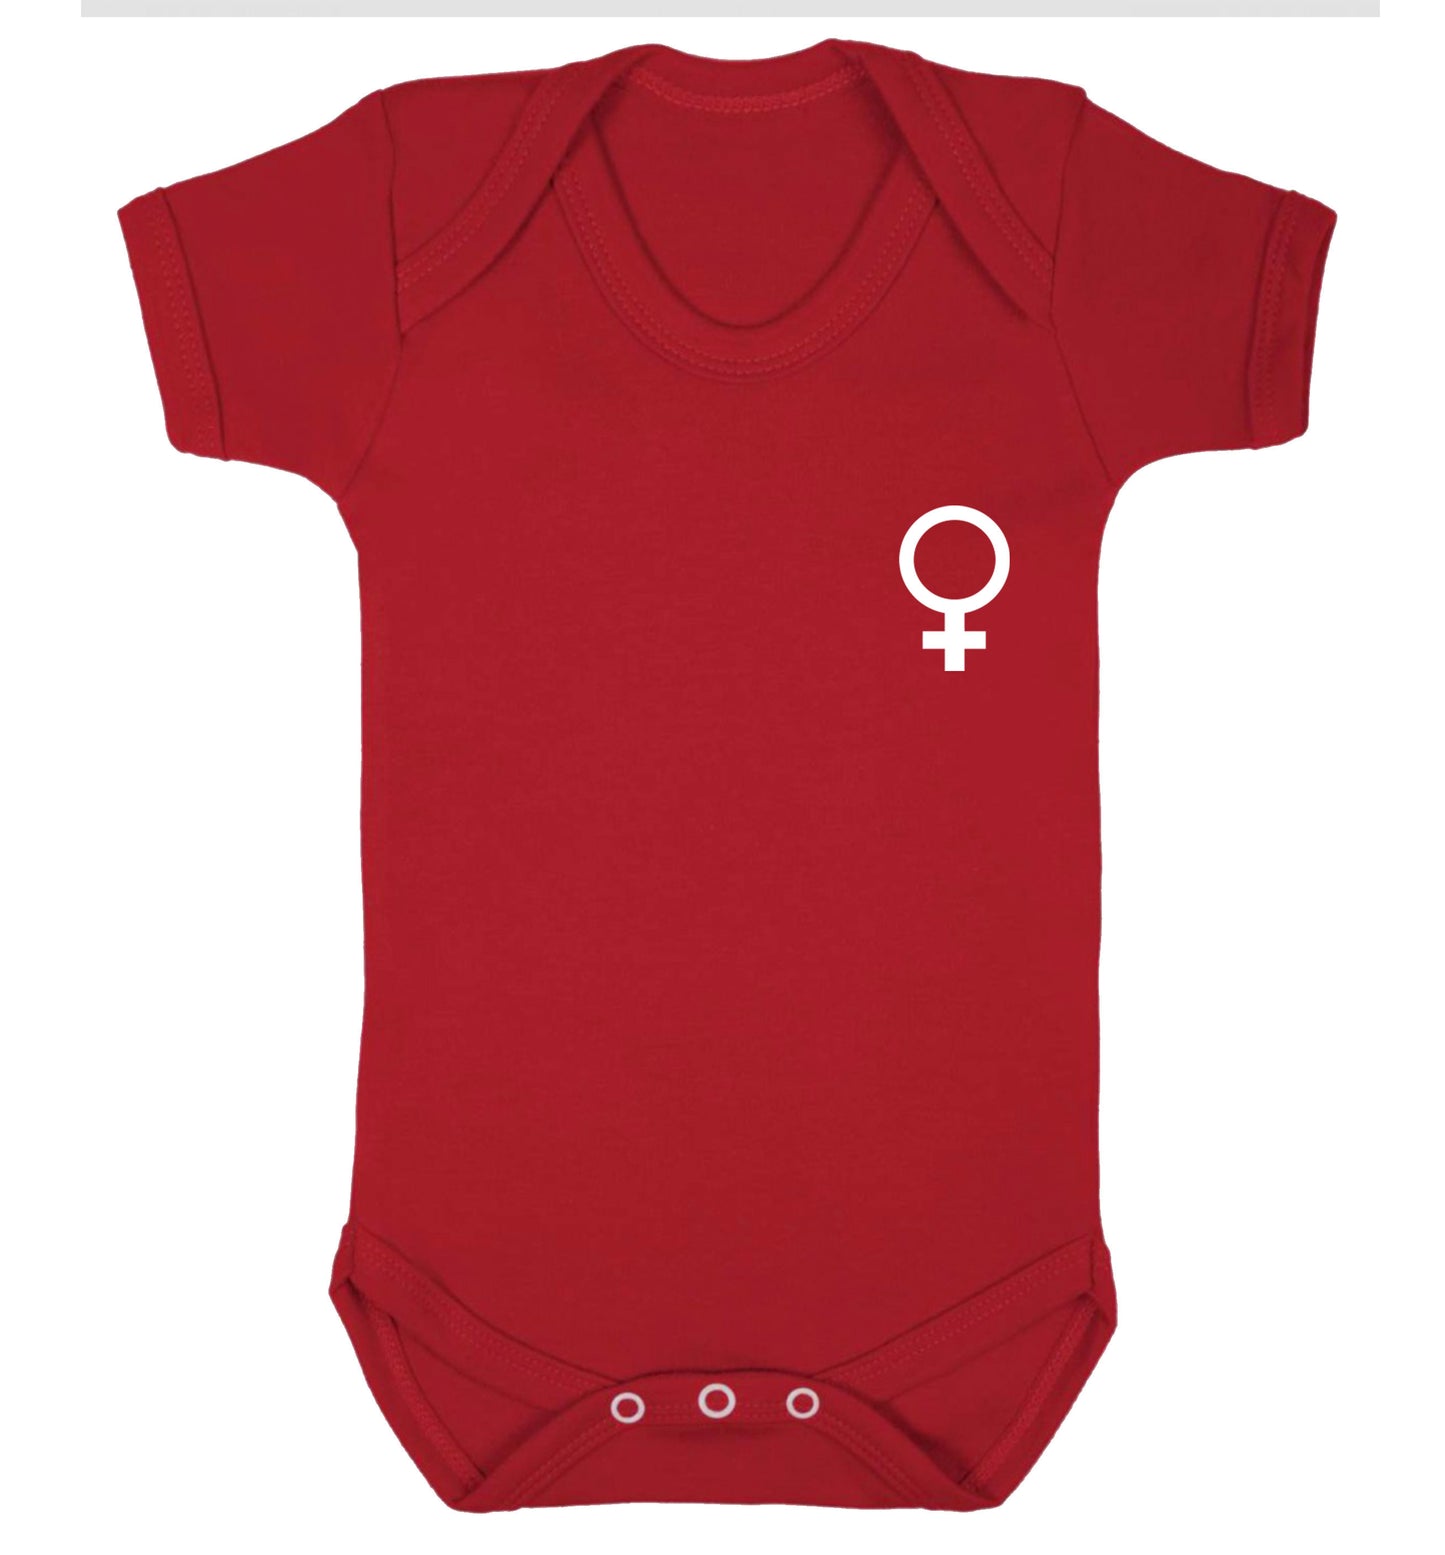 Female pocket symbol Baby Vest red 18-24 months